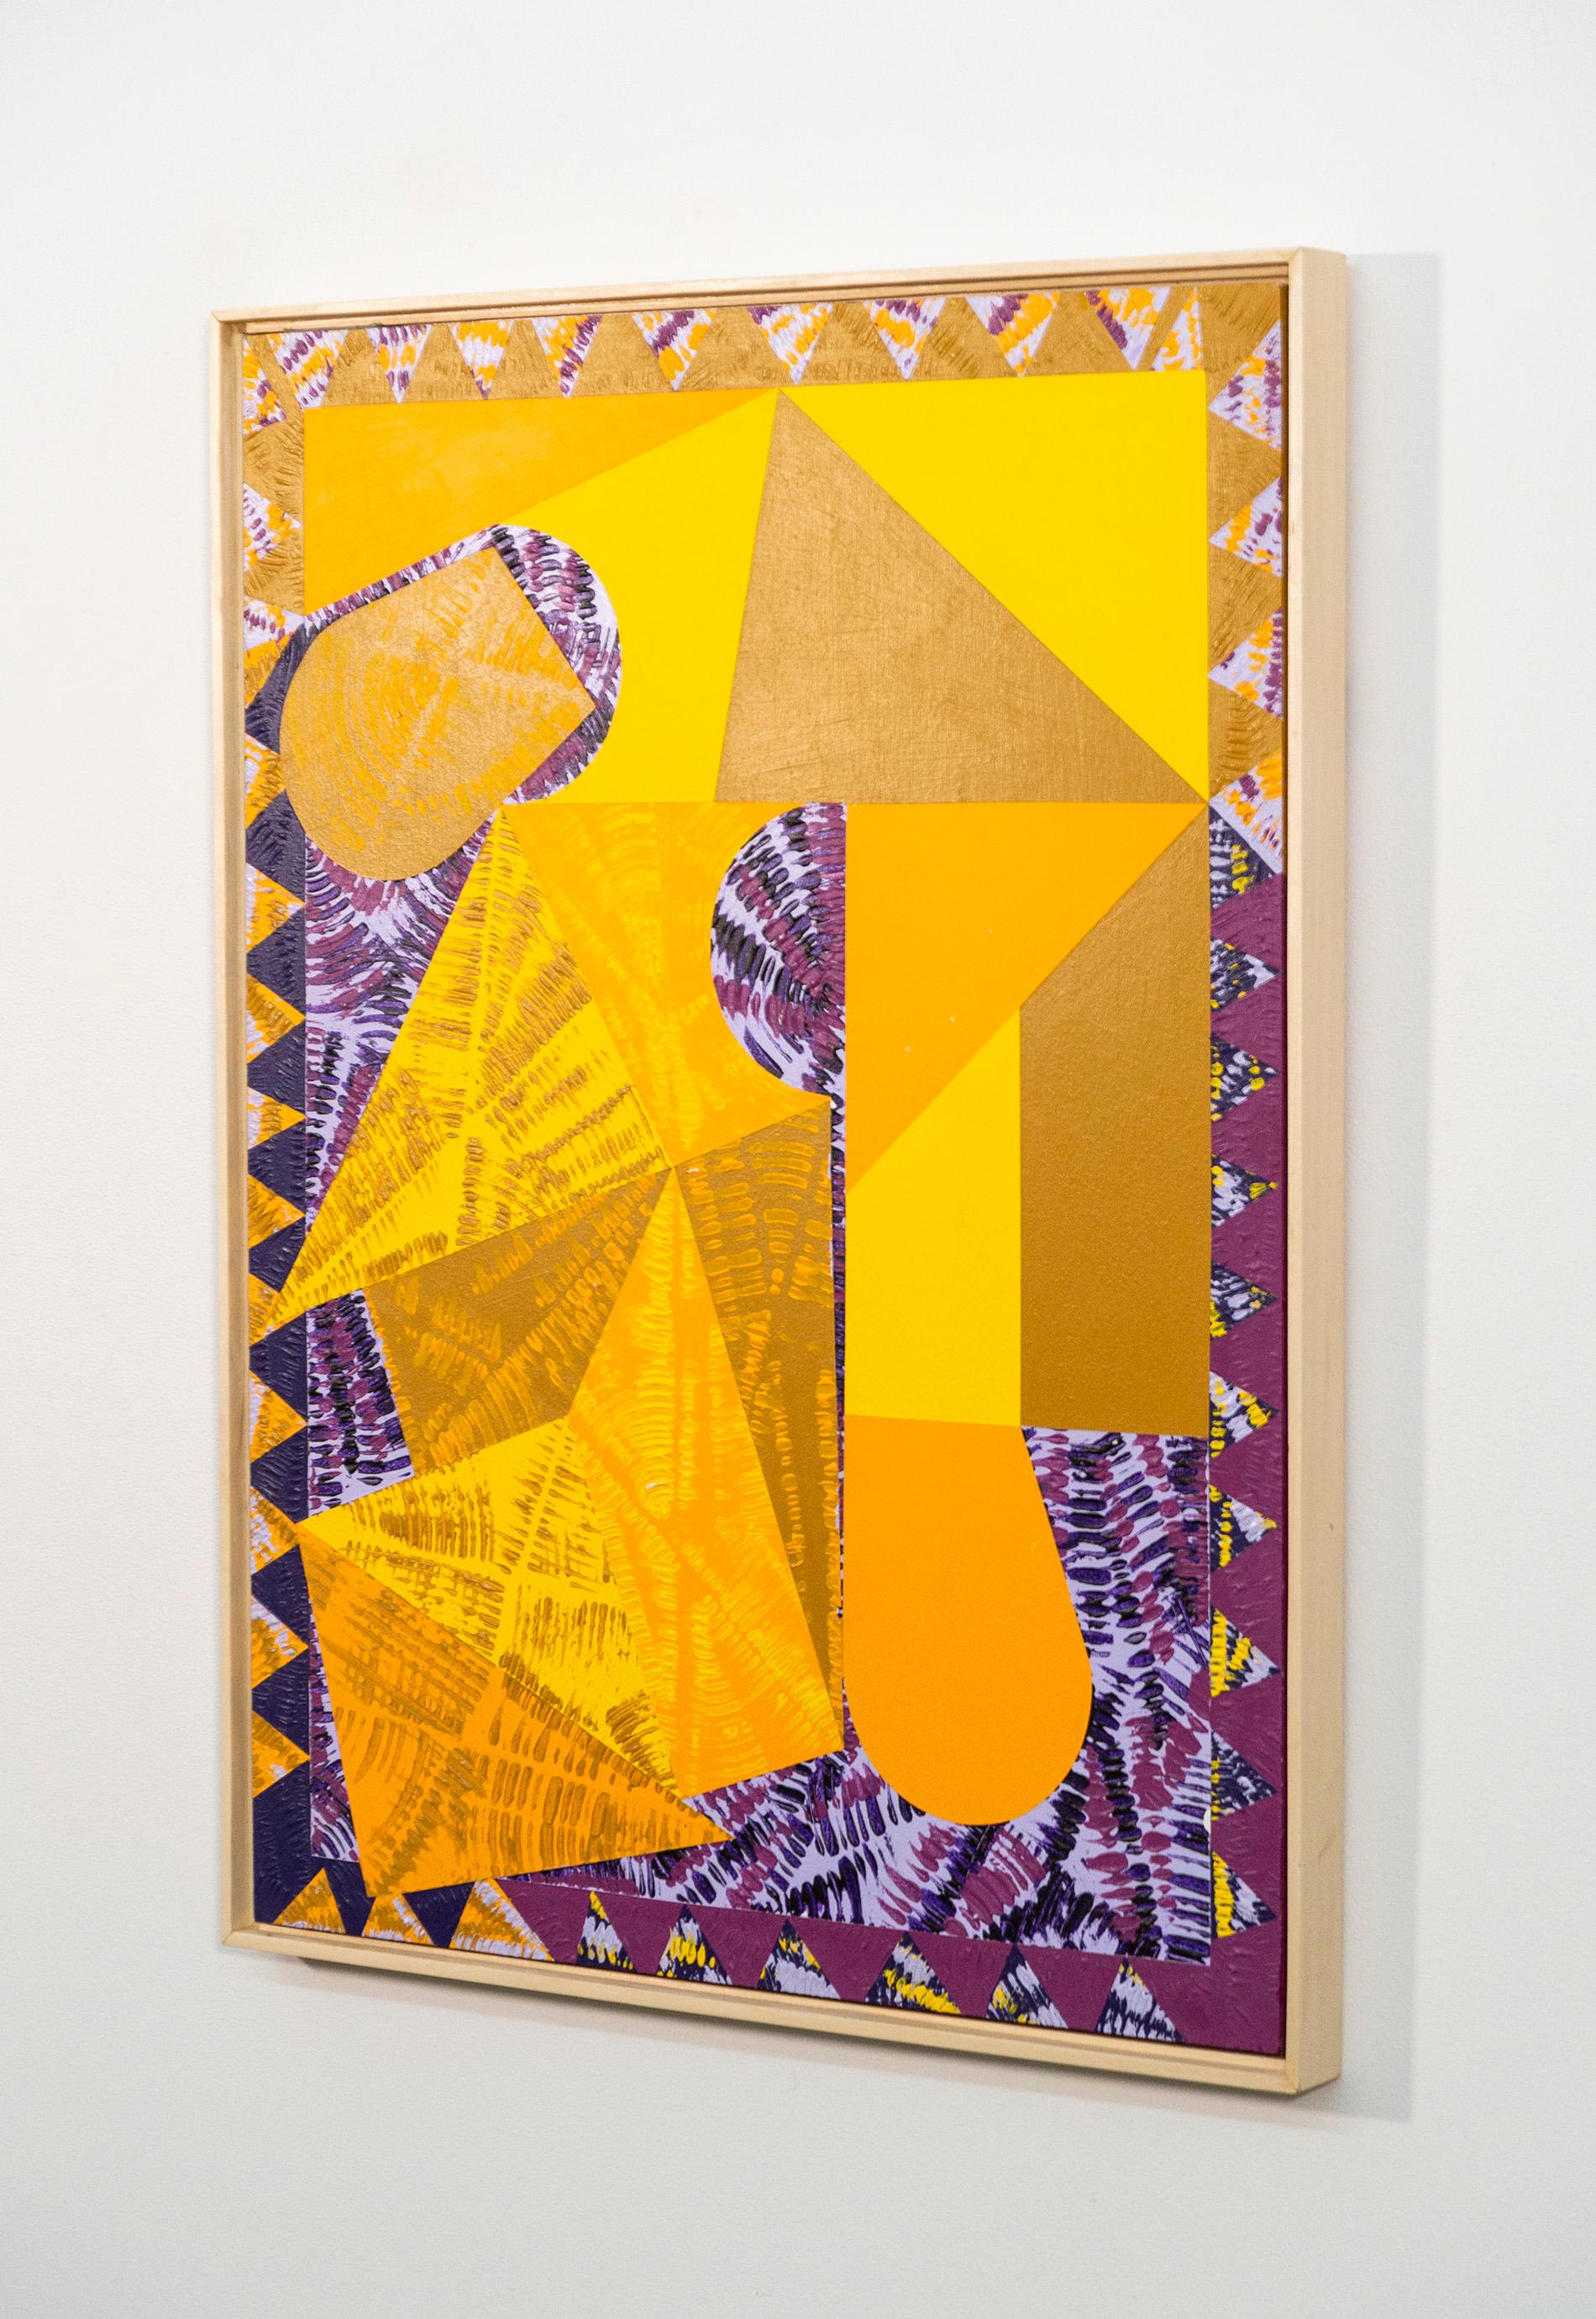 Seit Jahrzehnten stellt Yvonne Lammerich stimmungsvolle zeitgenössische Kunstwerke her, die international ausgestellt werden. Diese Serie farbenfroher grafischer Acrylbilder zeigt ihren meisterhaften Sinn für Farbe und Form. Geometrische Formen in